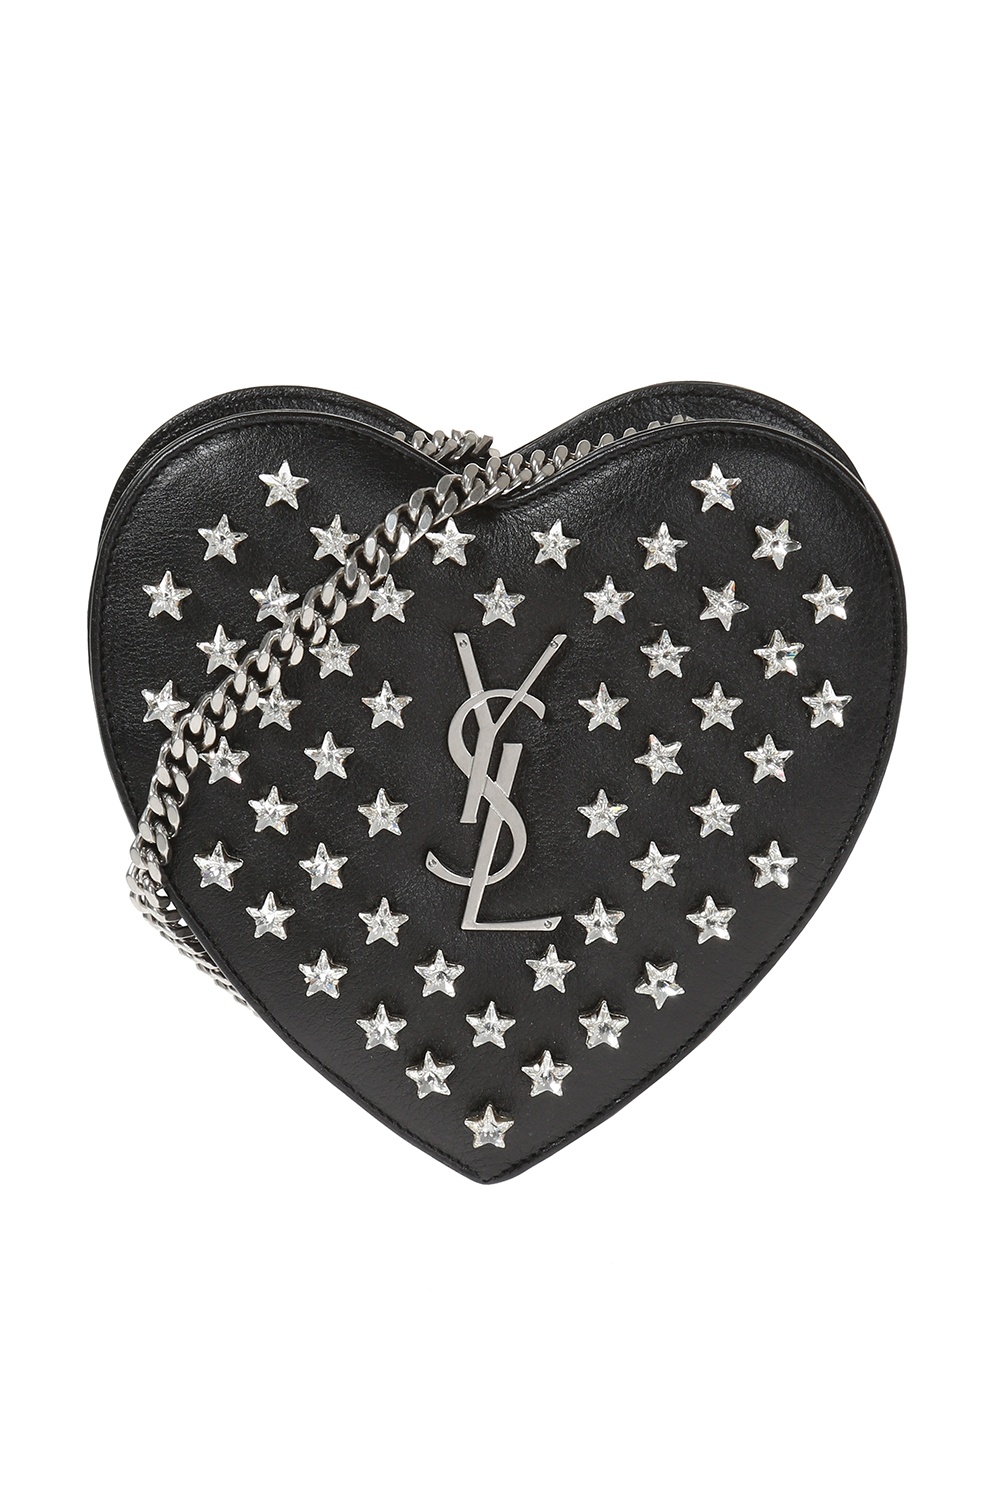 Black 'Love Heart' fringe shoulder bag Saint Laurent - Vitkac TW